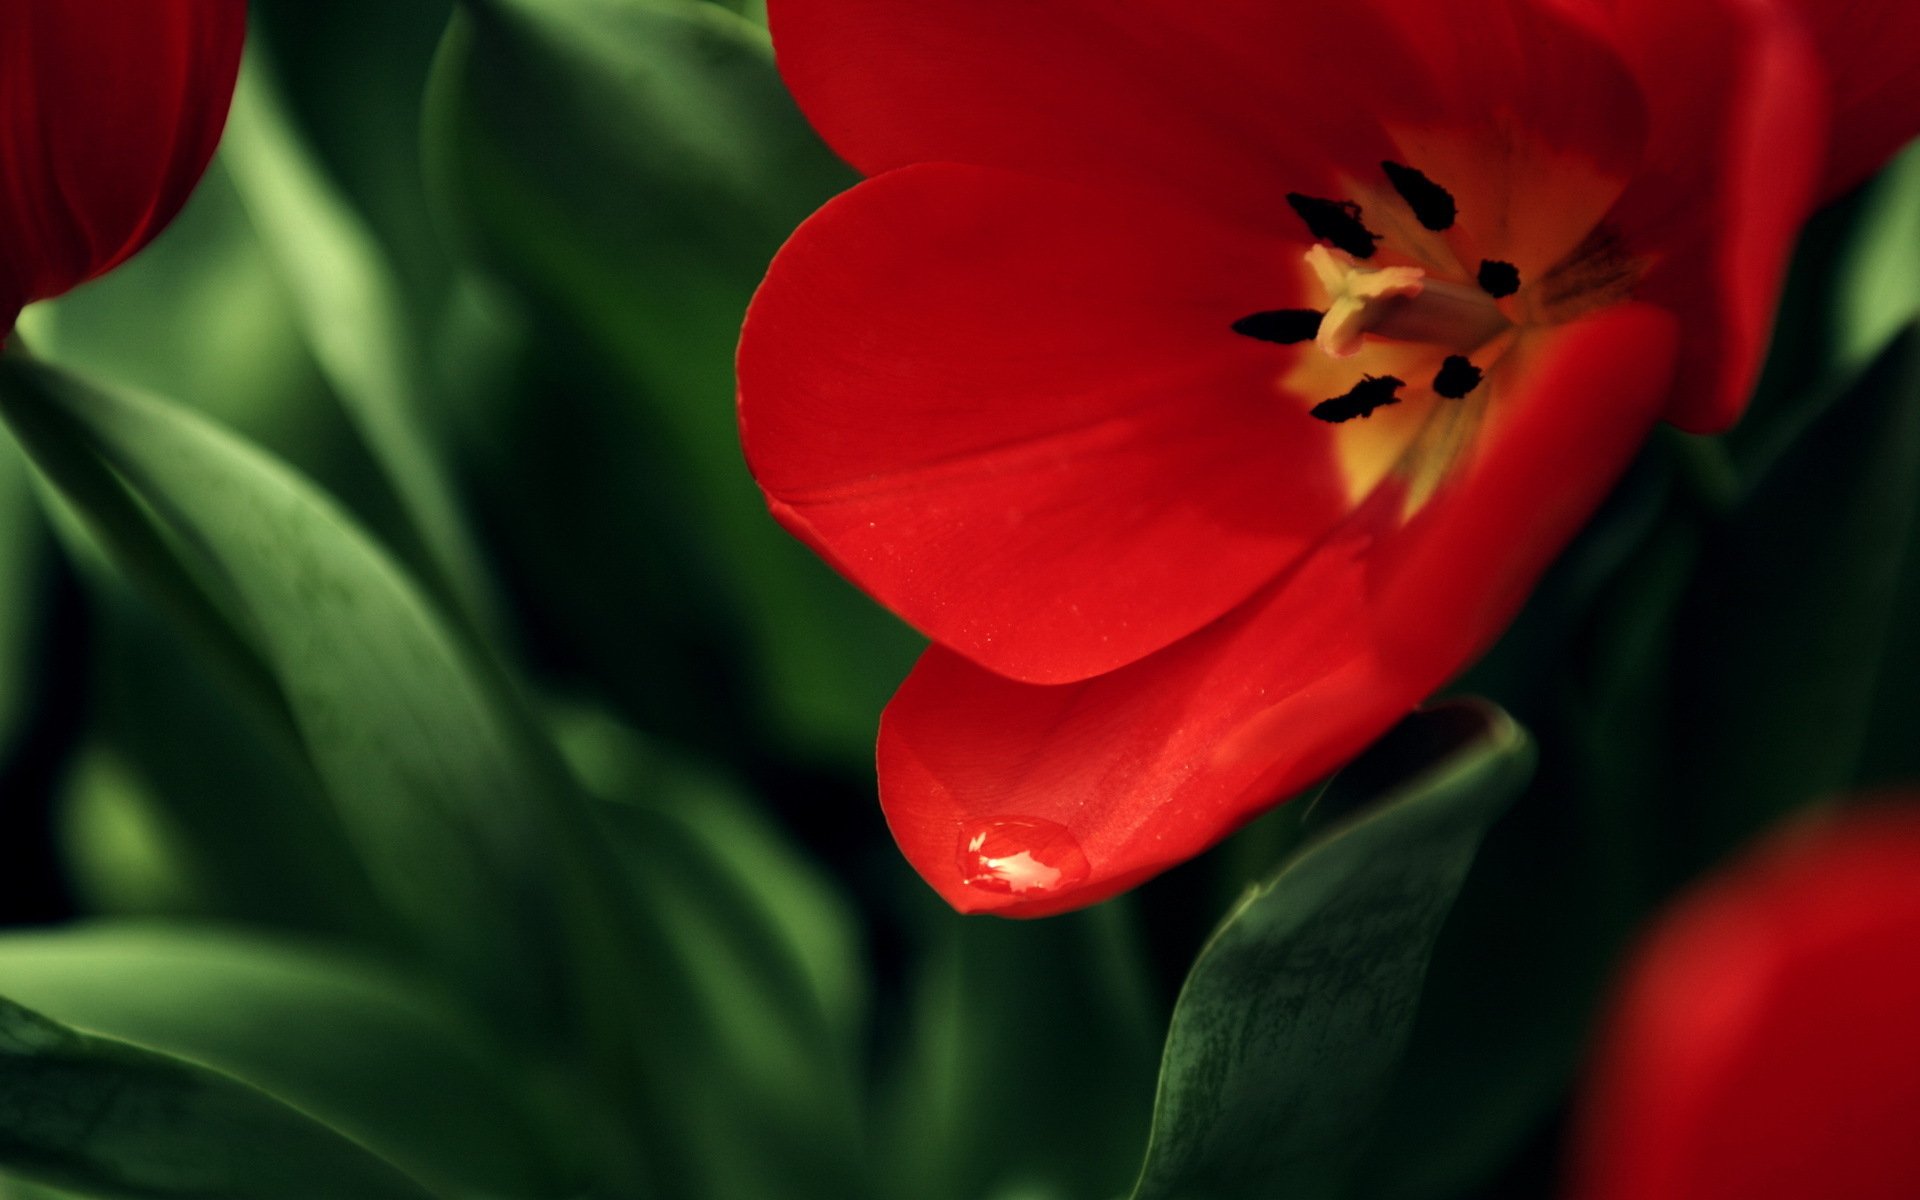 Обои с тюльпанами на телефон. Красный цвет. Красный цветок. Красные тюльпаны. Яркие цветы.